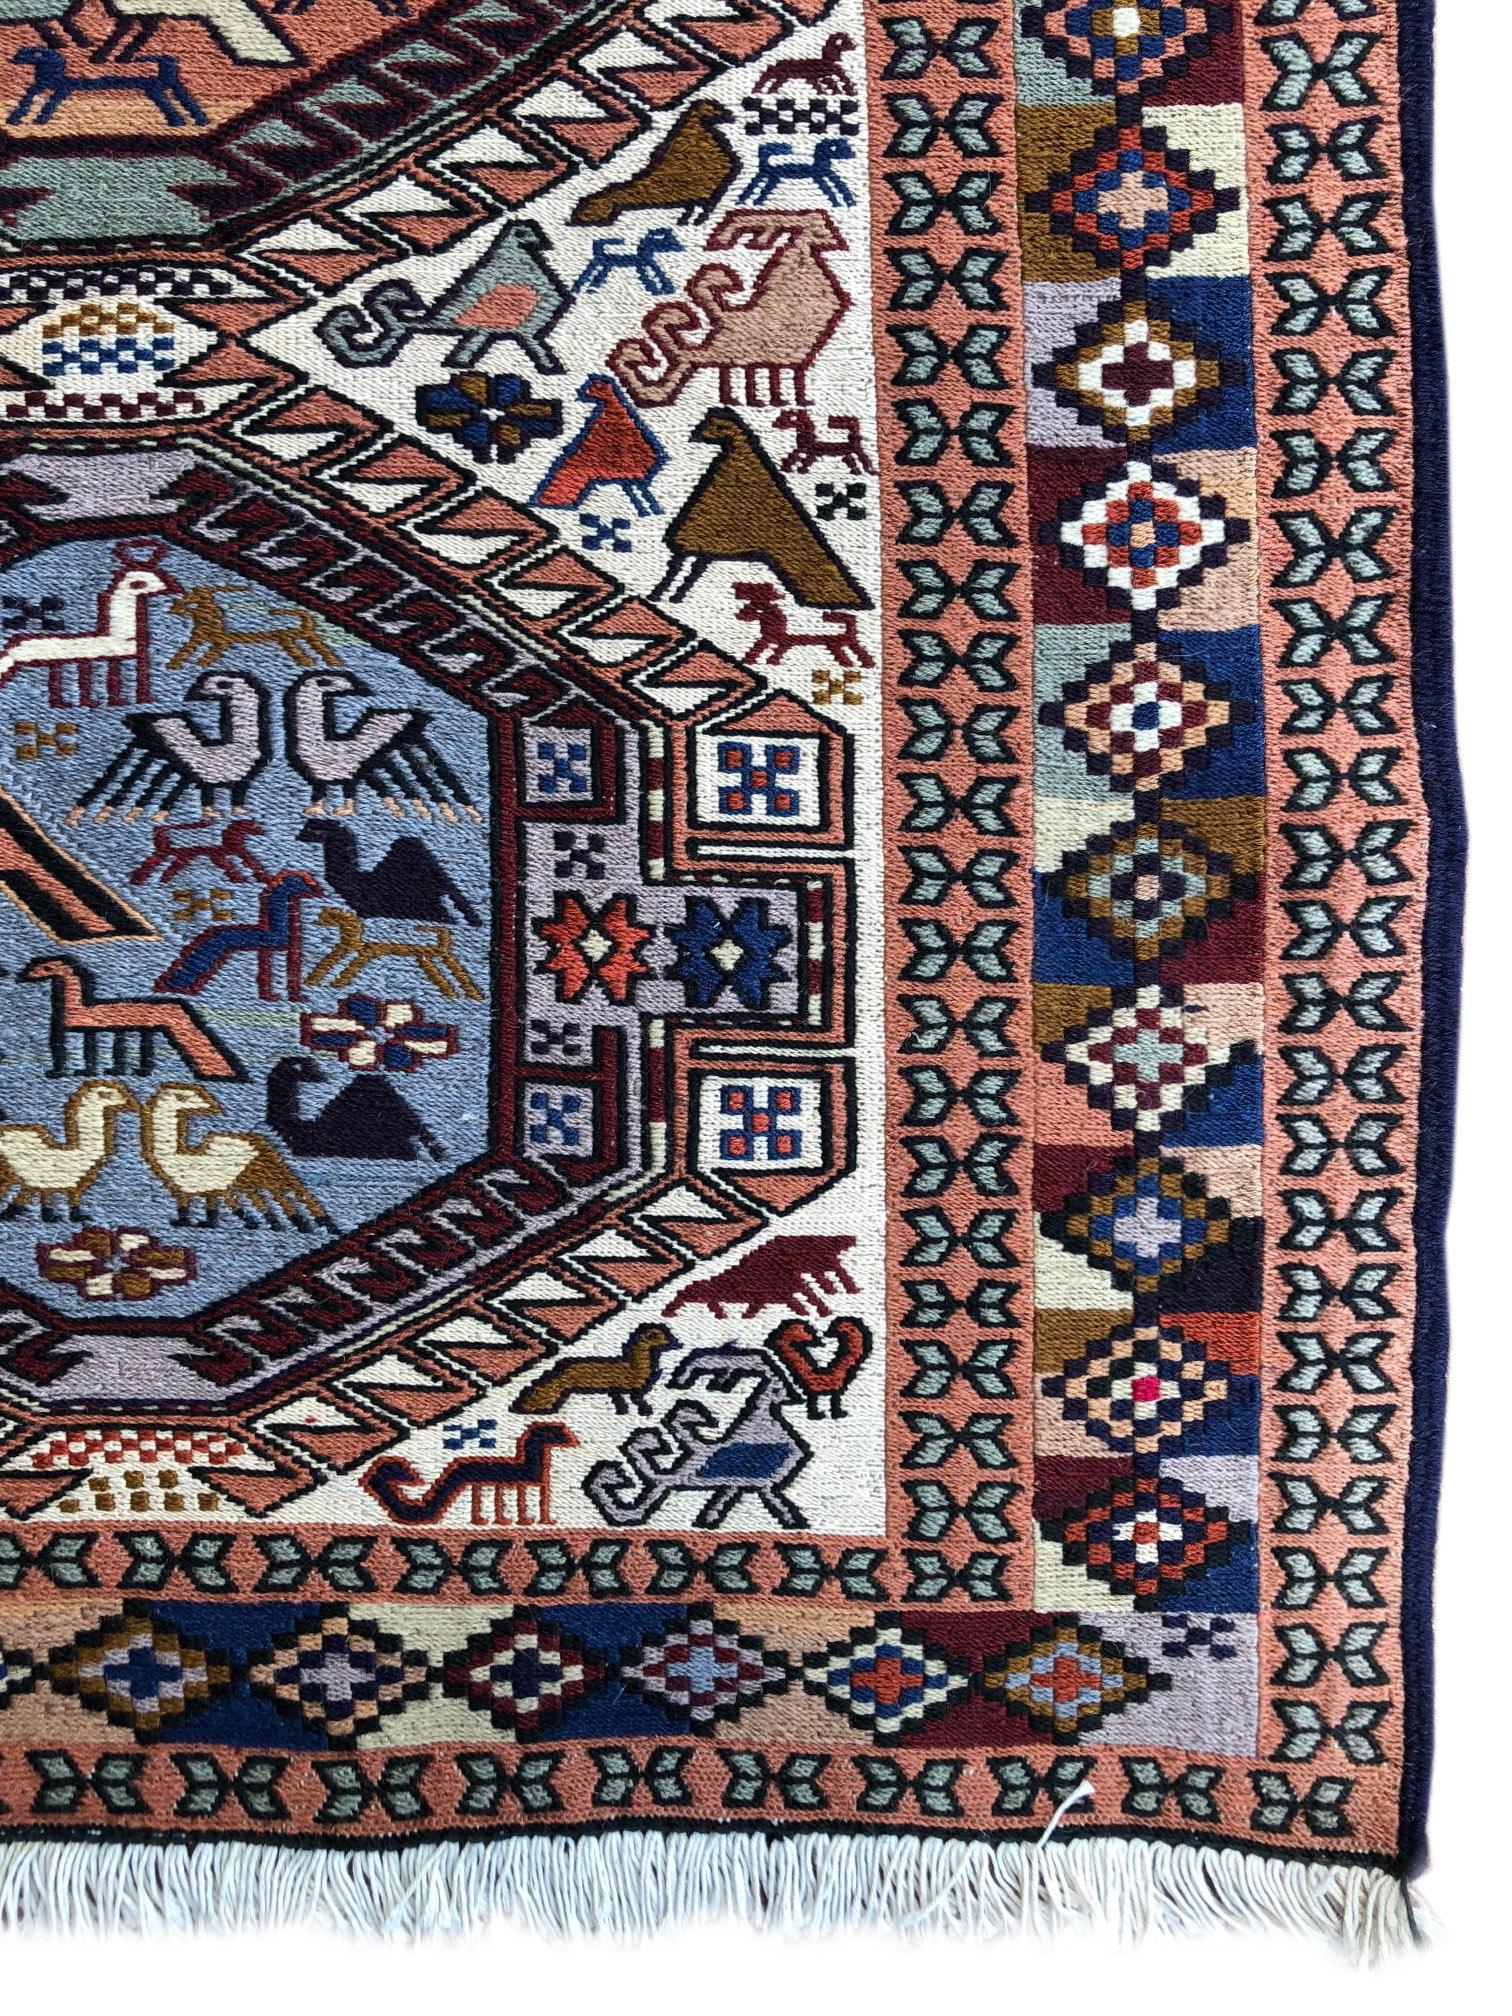 Persian Sumak Multi-Color Tribal Animal Motif Kilim Rug For Sale 1